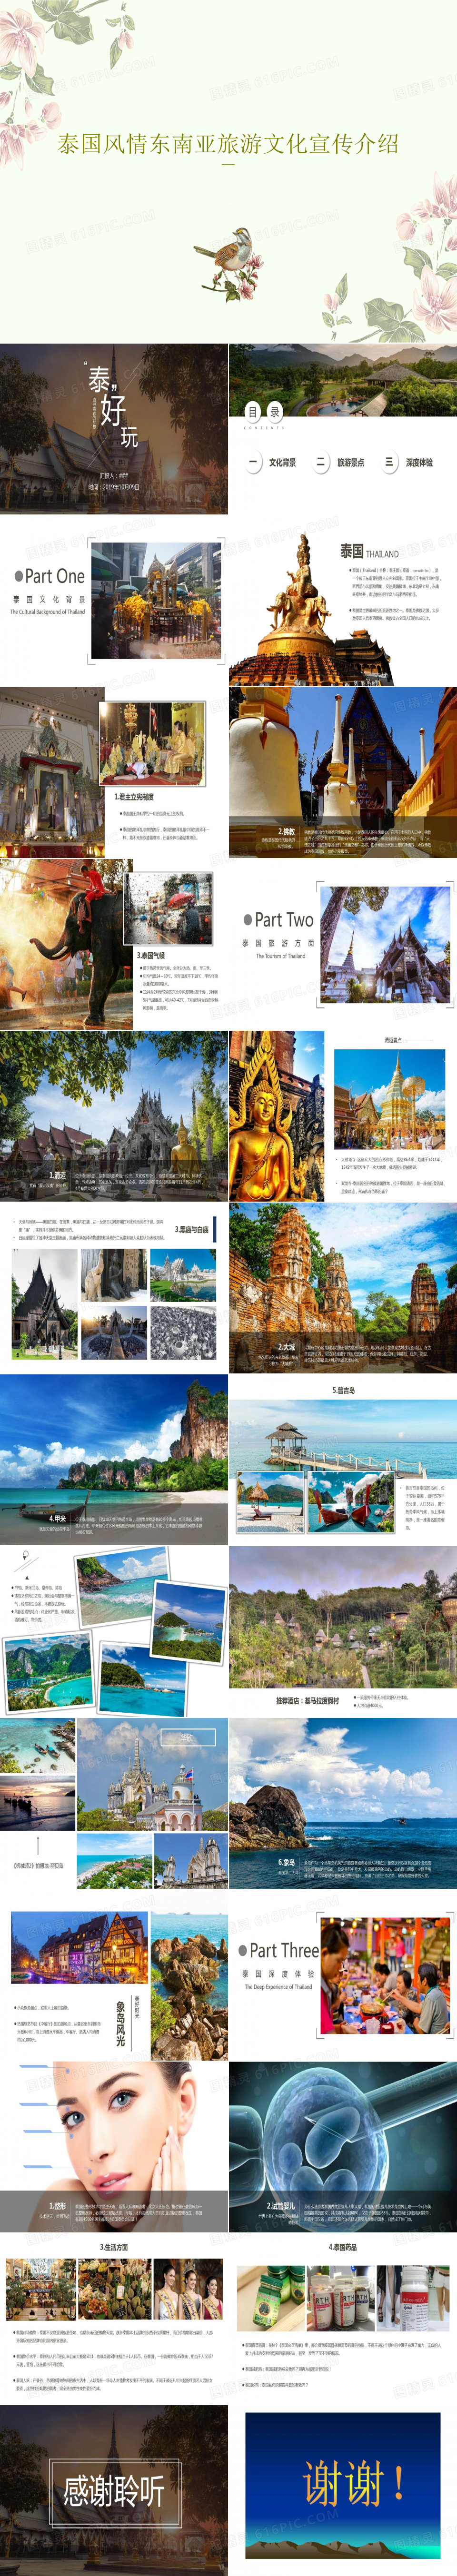 泰国风情东南亚旅游文化宣传介绍共27页PPT